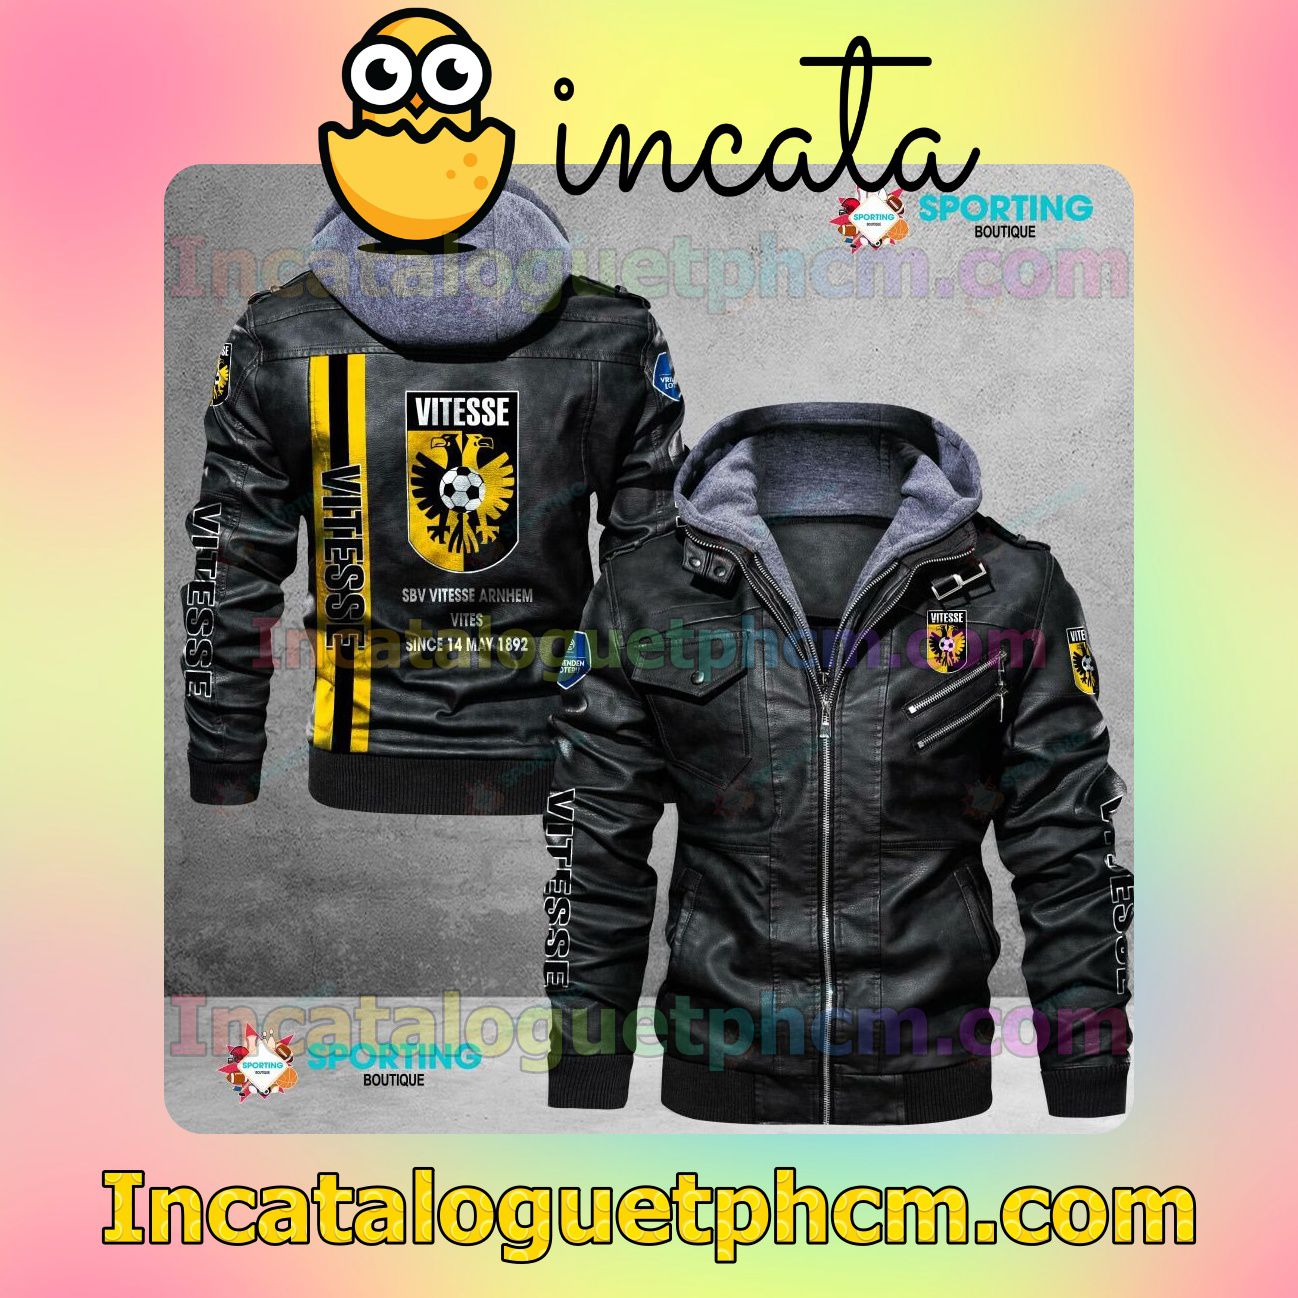 Vitesse Brand Uniform Leather Jacket